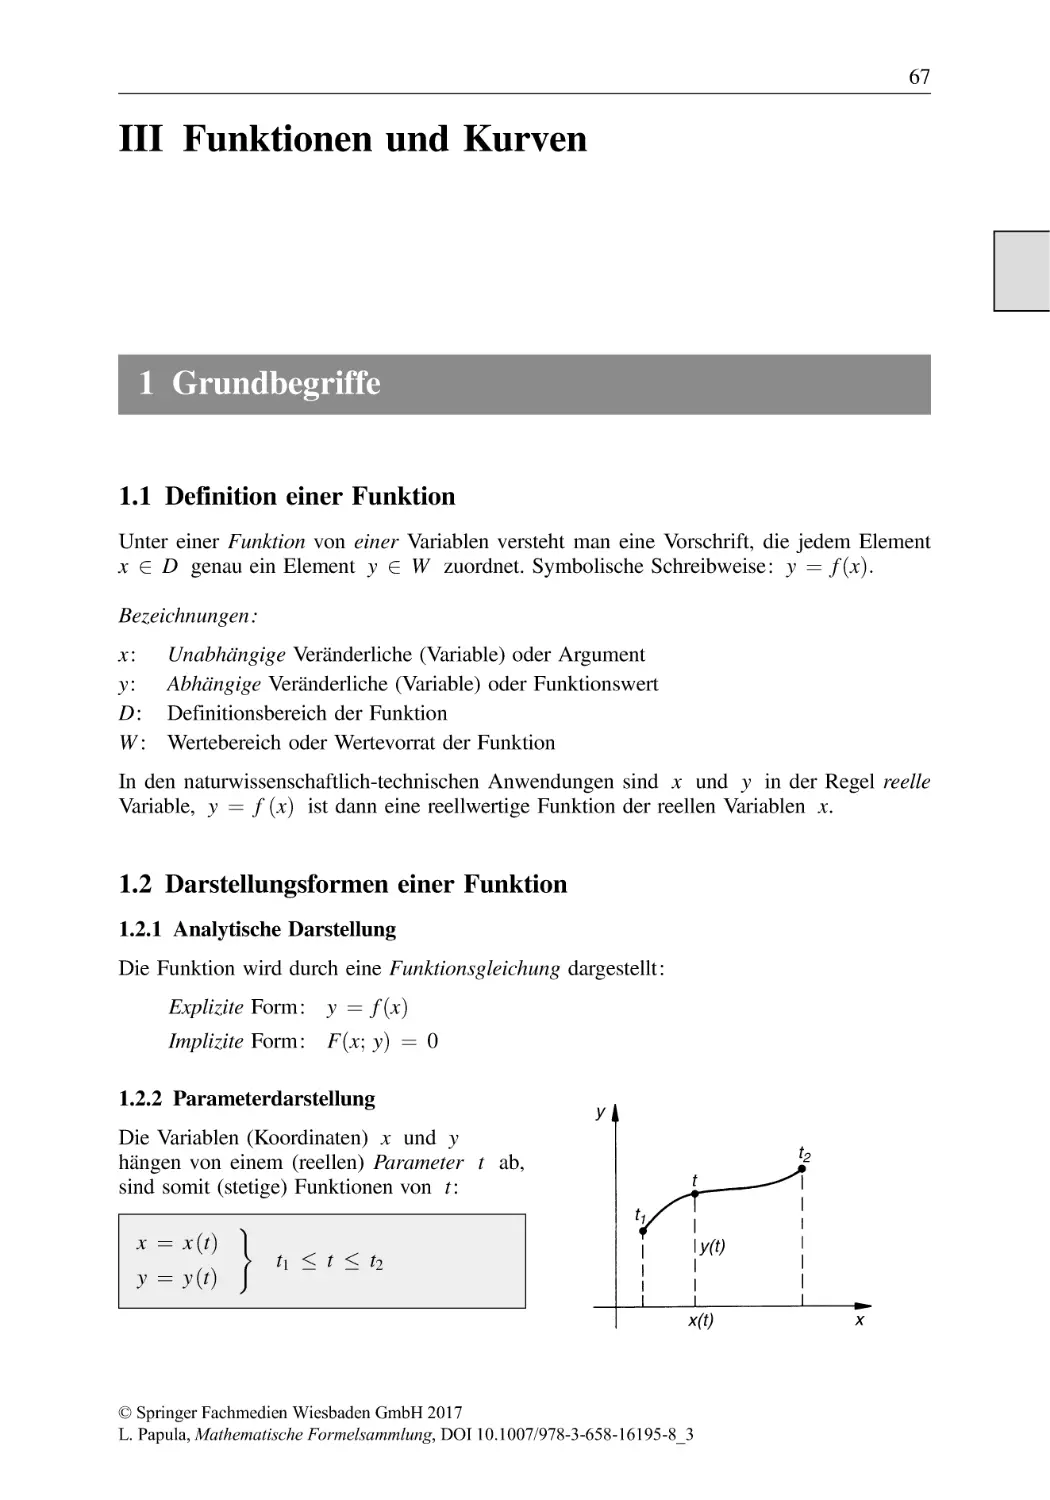 Funktionen und Kurven
1 Grundbegriffe
1.1 Definition einer Funktion
1.2 Darstellungsformen einer Funktion
1.2.1 Analytische Darstellung
1.2.2 Parameterdarstellung